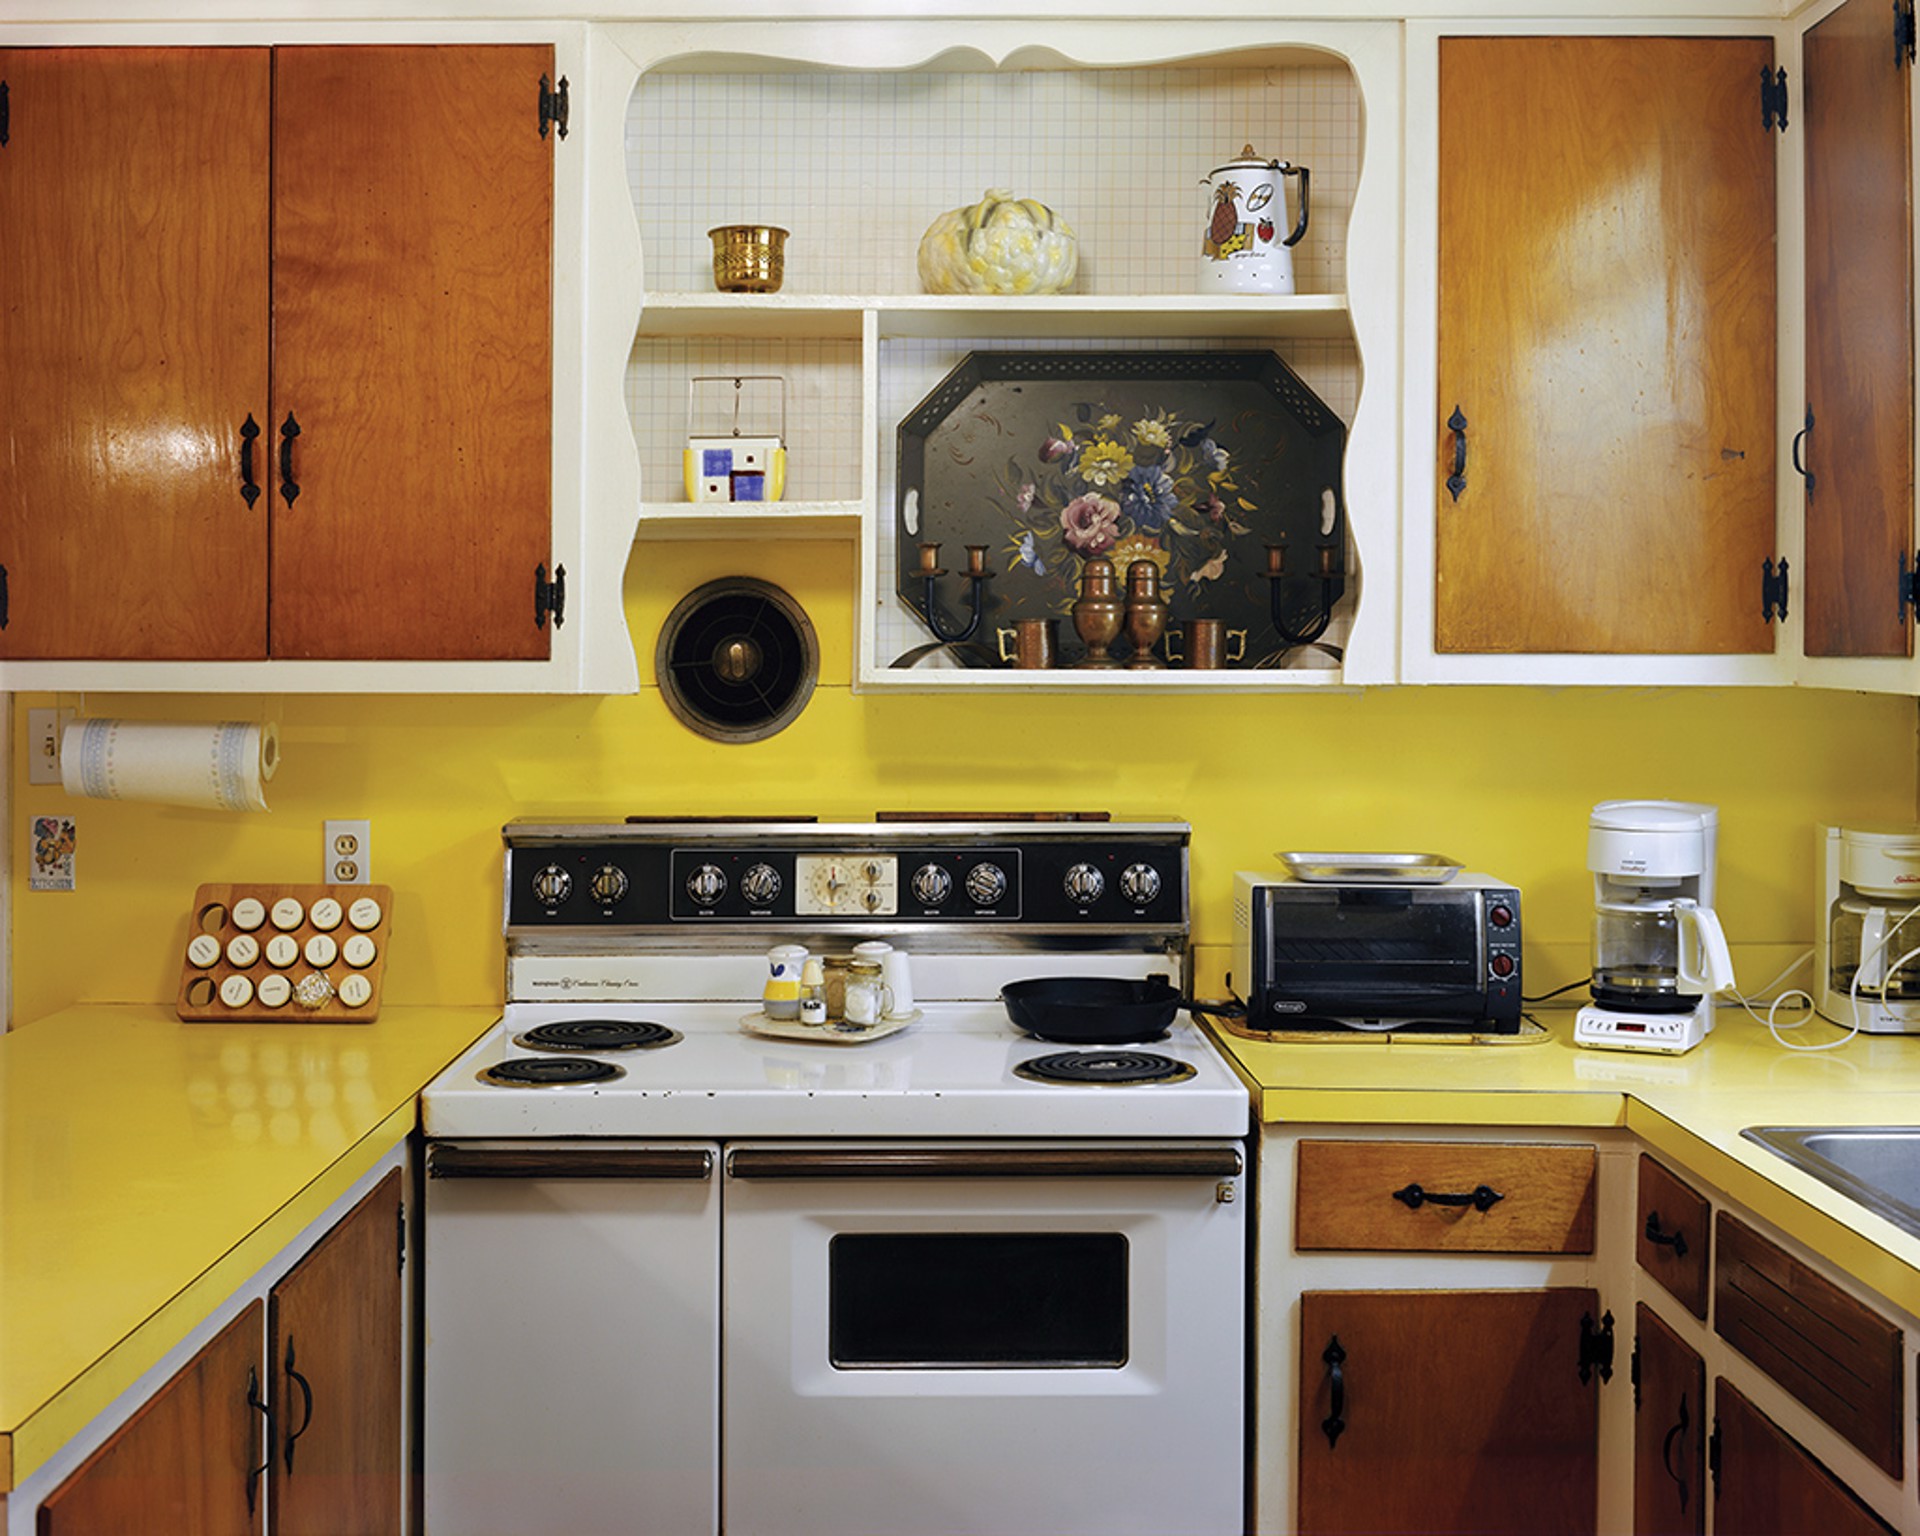 Kitchen, Selma, AL by Jerry Siegel